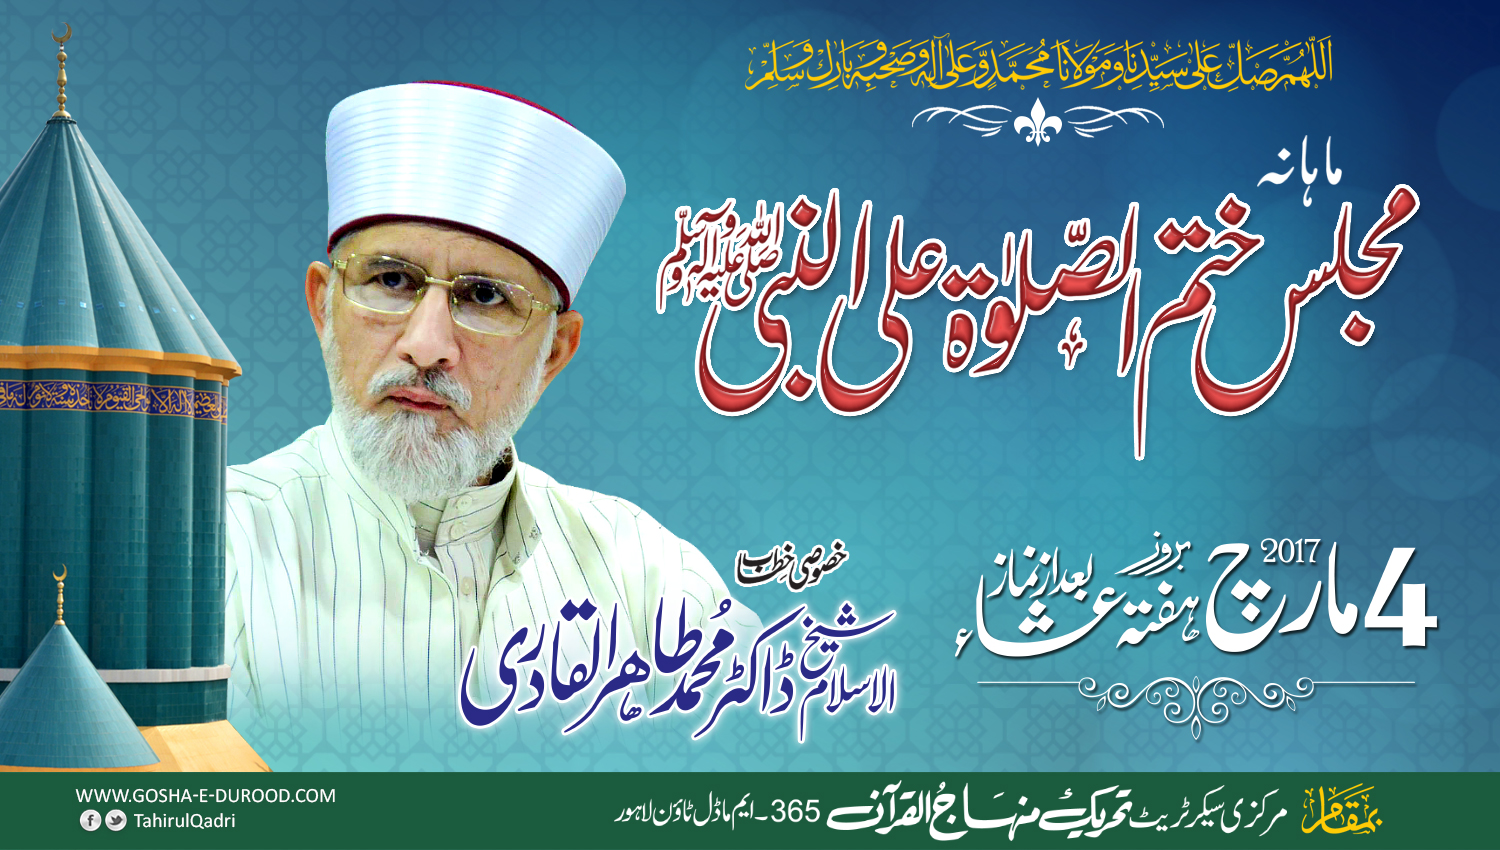 Lahore: Monthly Spiritual Gathering of Gosha-e-Durood